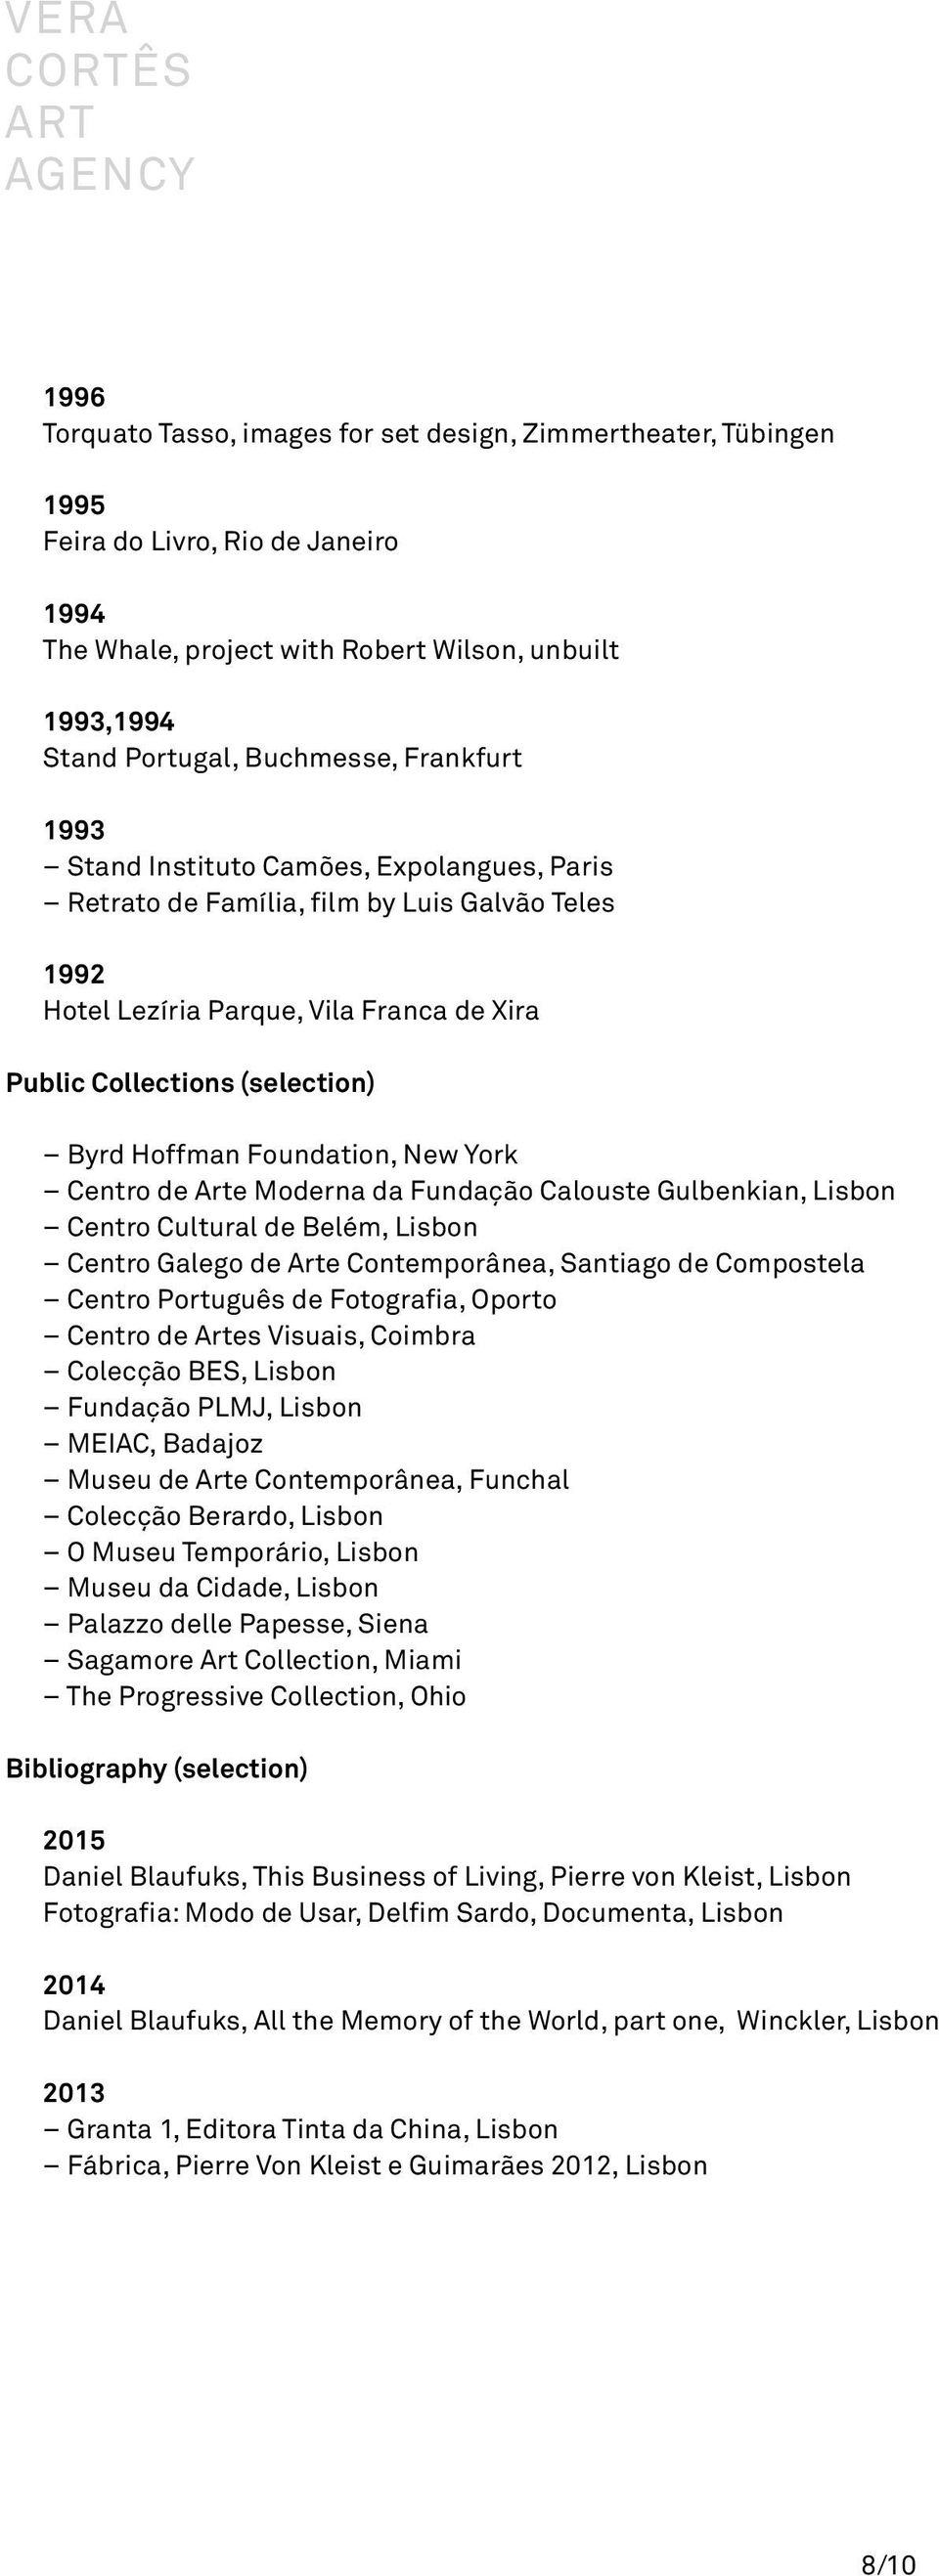 Foundation, New York Centro de Arte Moderna da Fundação Calouste Gulbenkian, Lisbon Centro Cultural de Belém, Lisbon Centro Galego de Arte Contemporânea, Santiago de Compostela Centro Português de